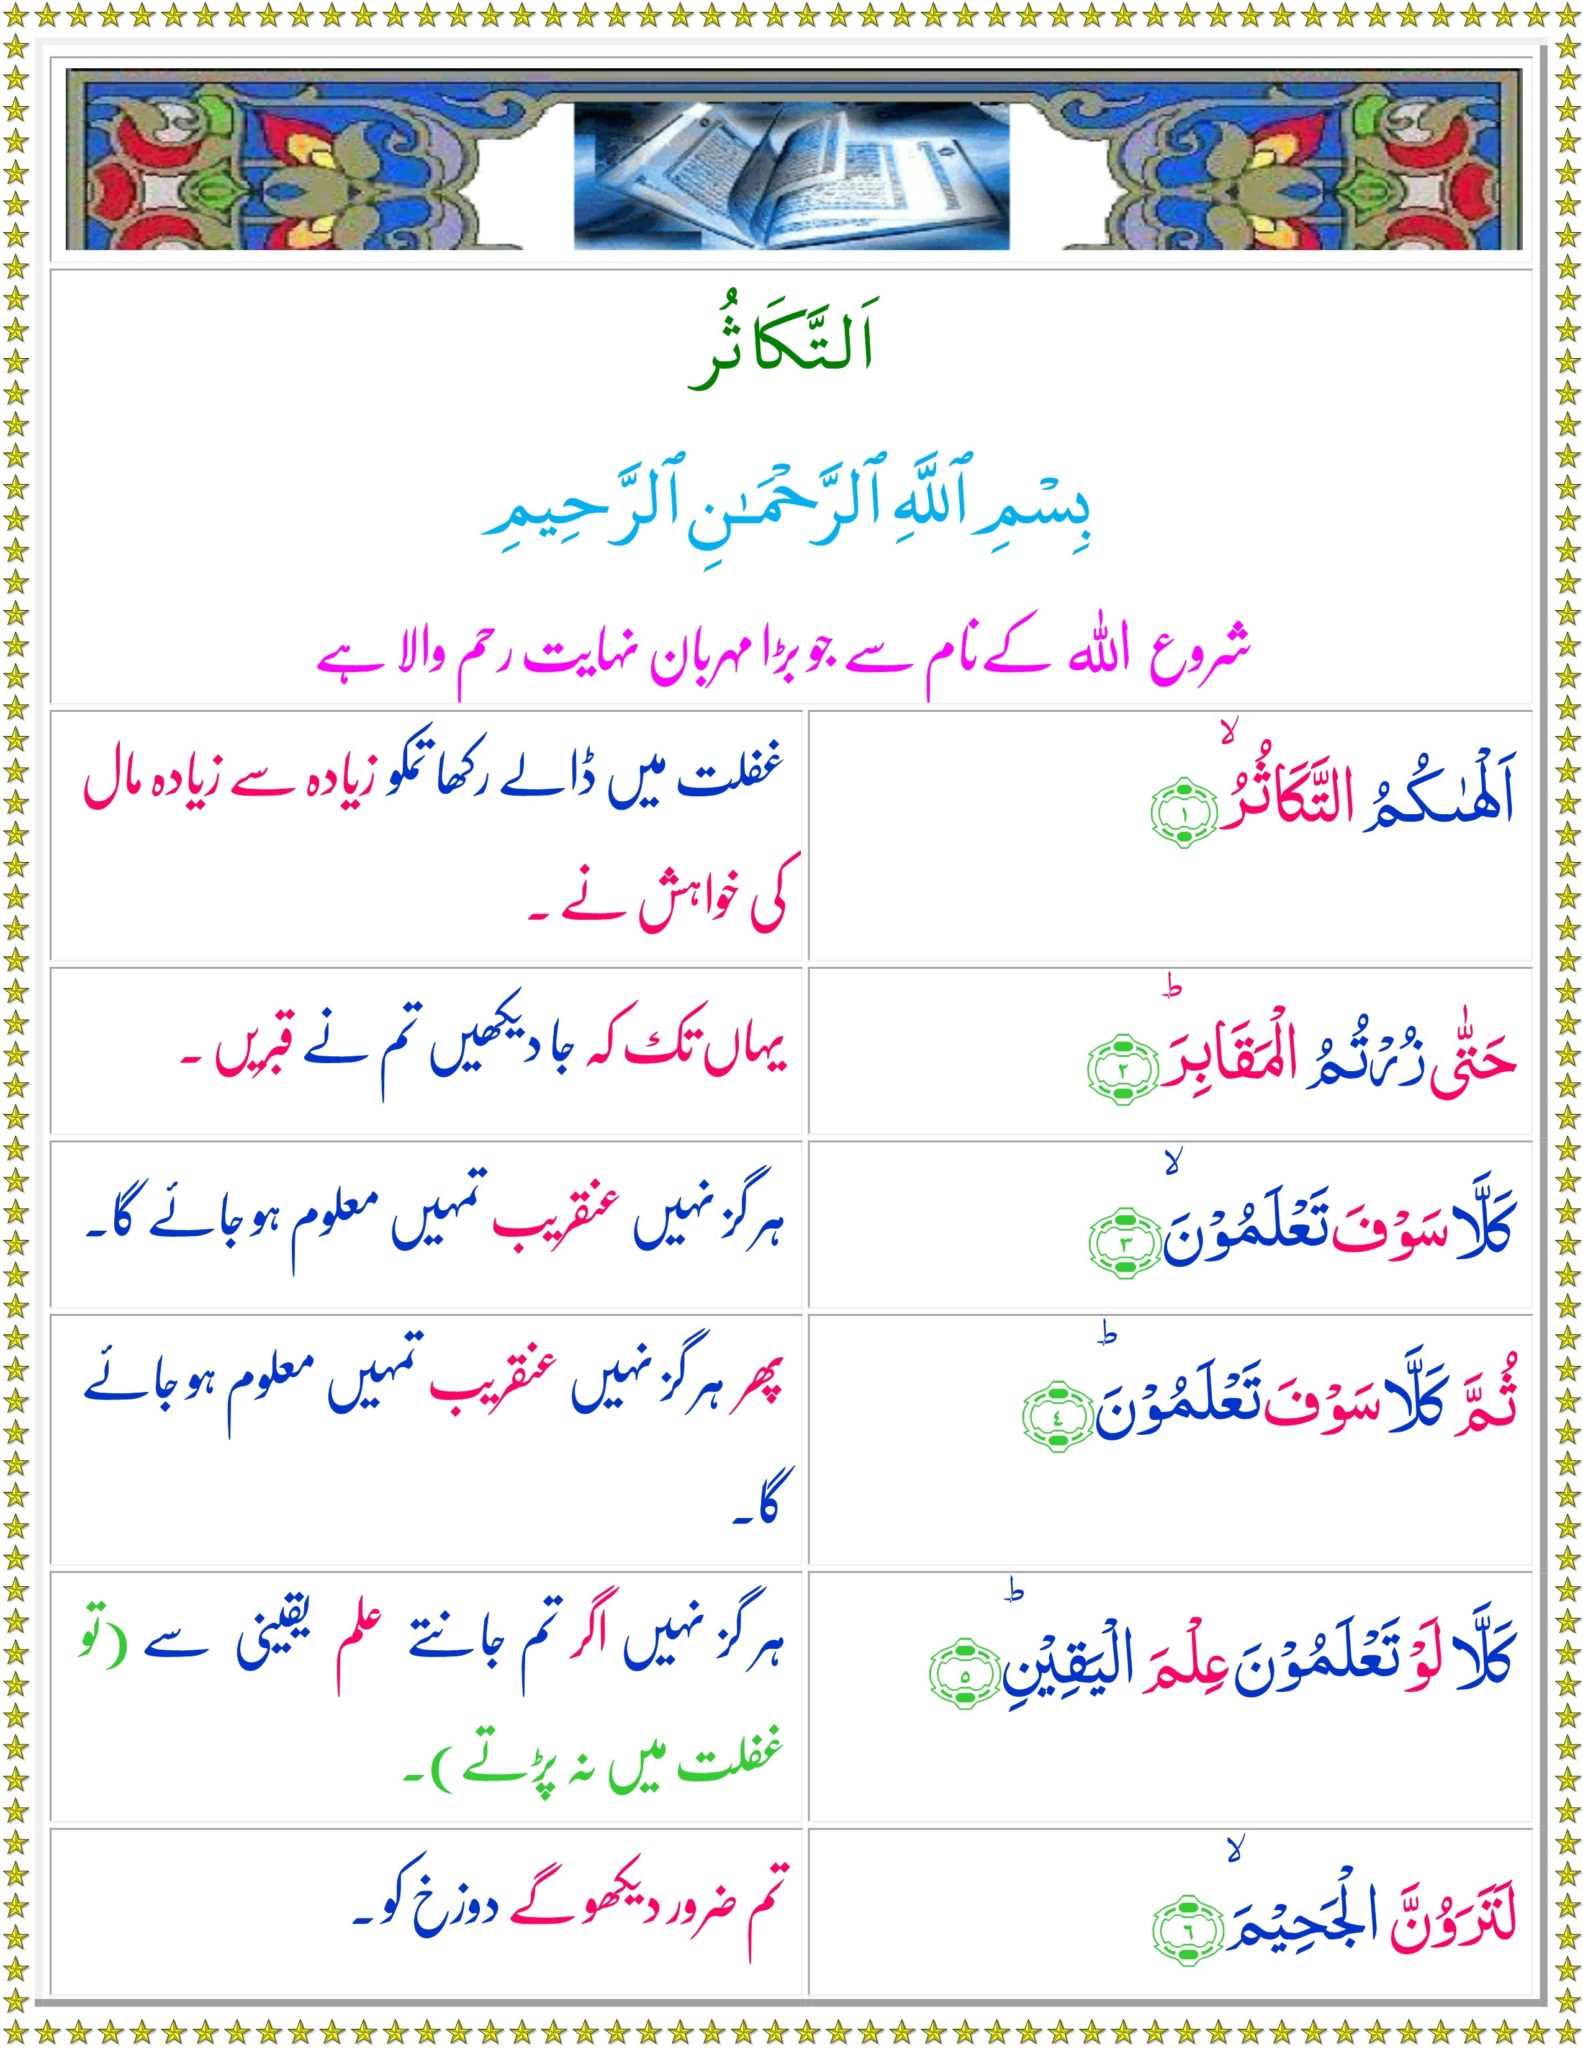 Surah Takasur translation in Urdu, Hindi